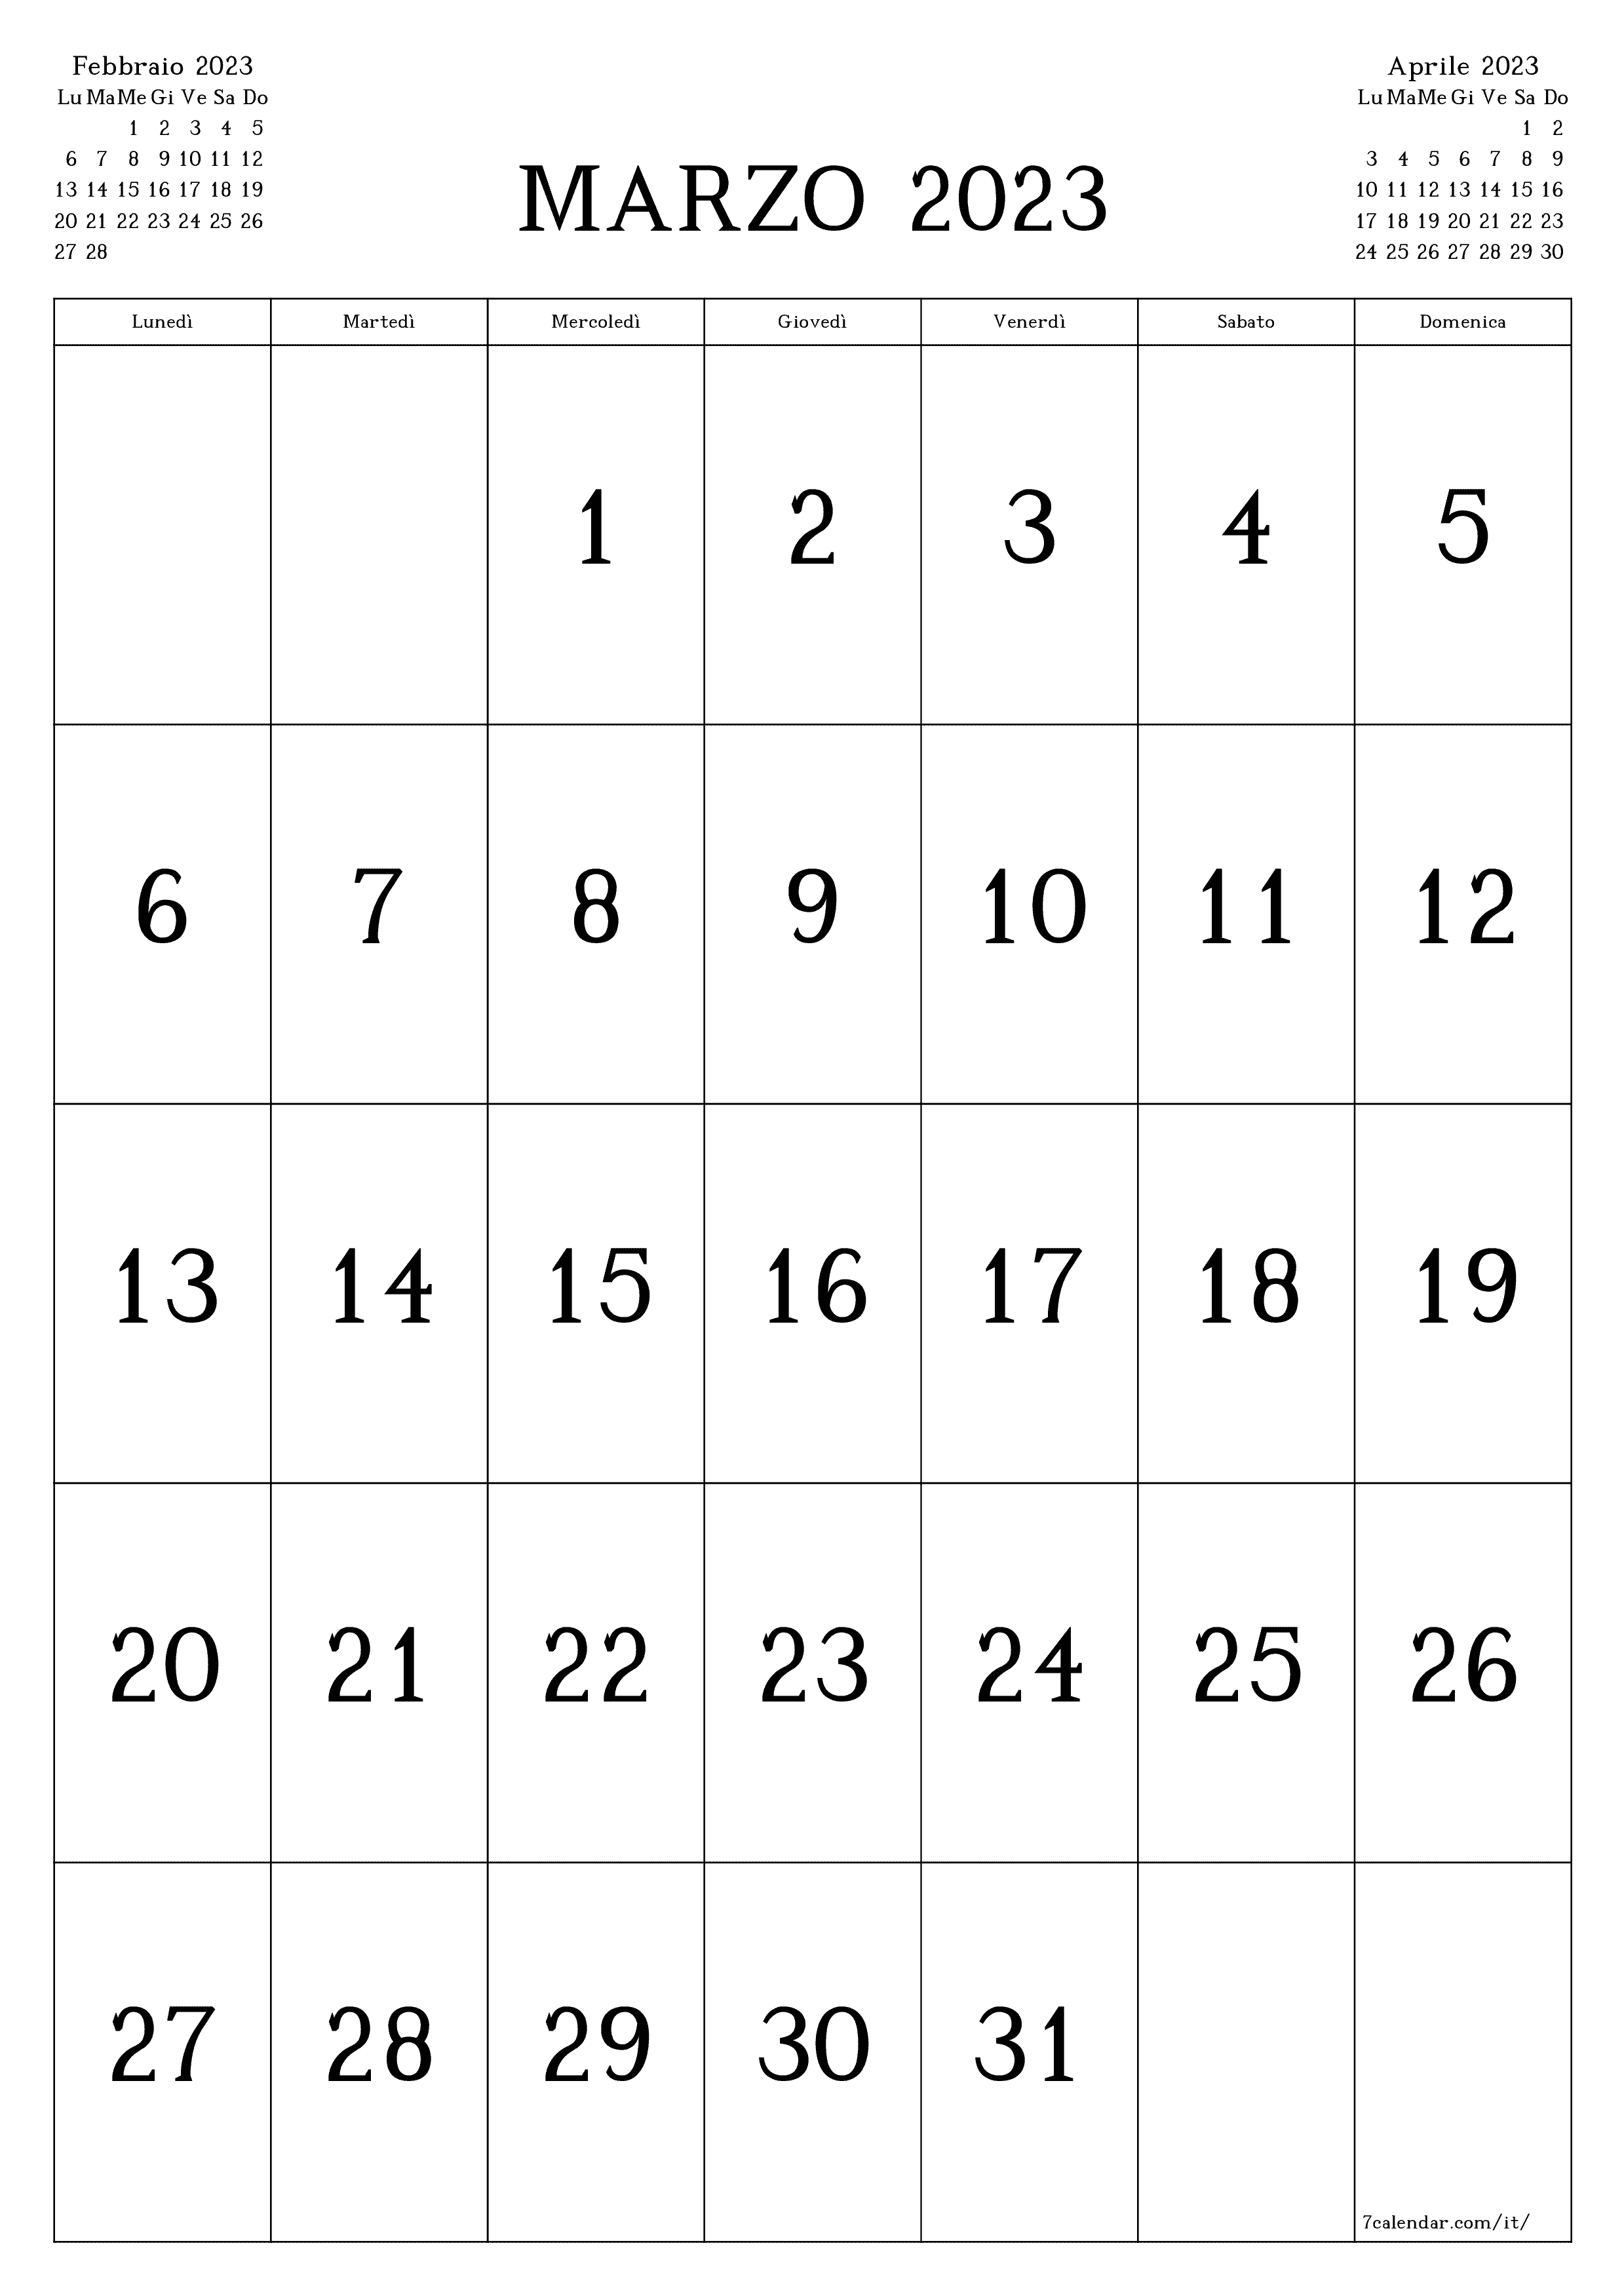 Calendario mensile vuoto per il mese Marzo 2023 salva e stampa in PDF PNG Italian - 7calendar.com